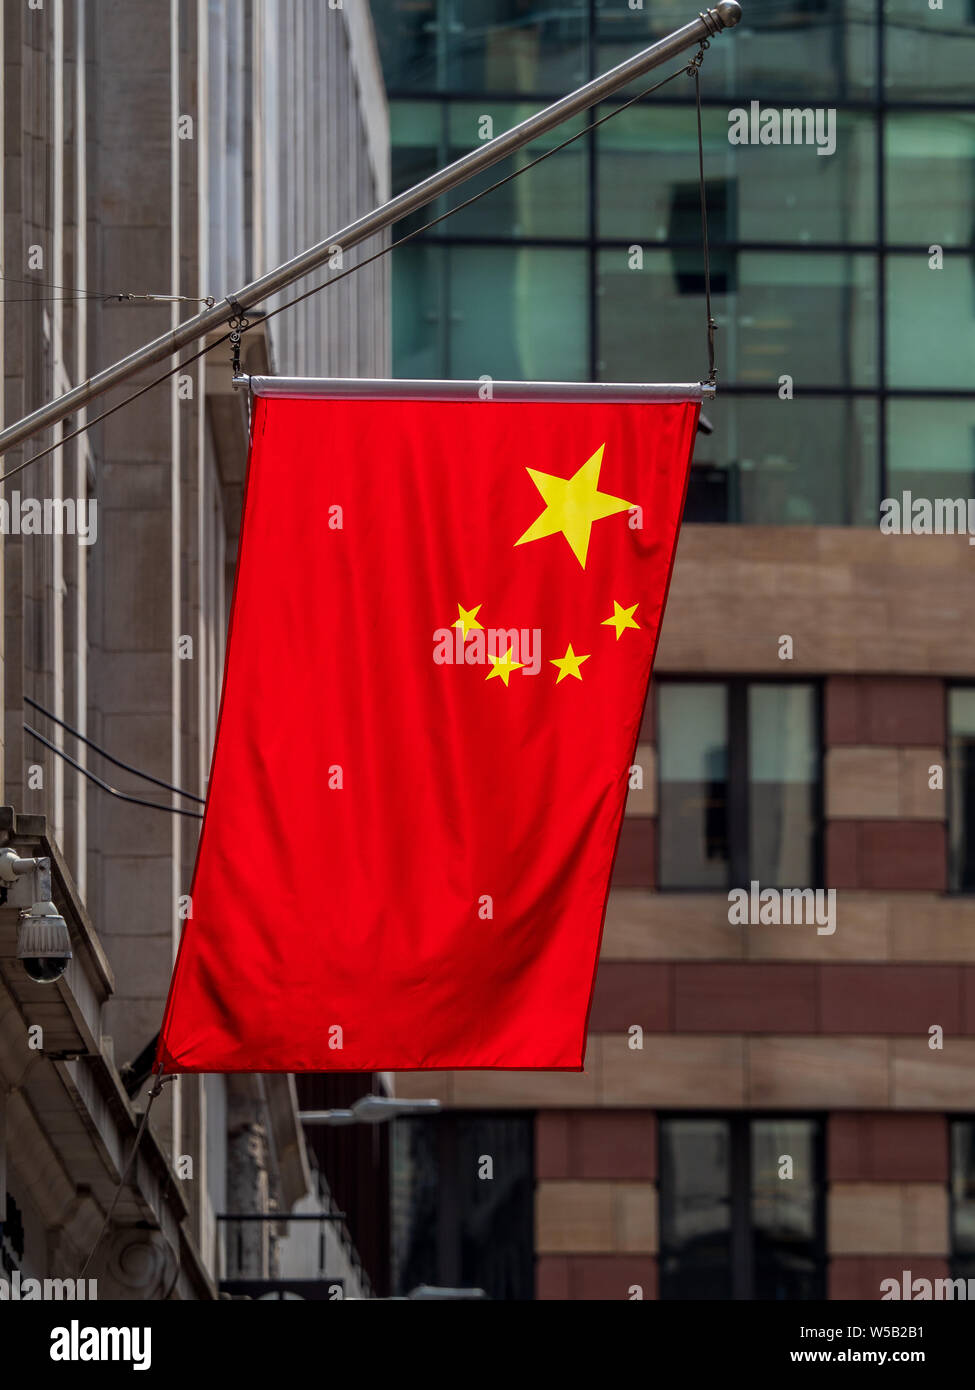 Les drapeaux chinois dans la ville de Londres - drapeaux chinois marquer la présence croissante des banques chinoises dans la ville de Londres quartier financier. Banque D'Images